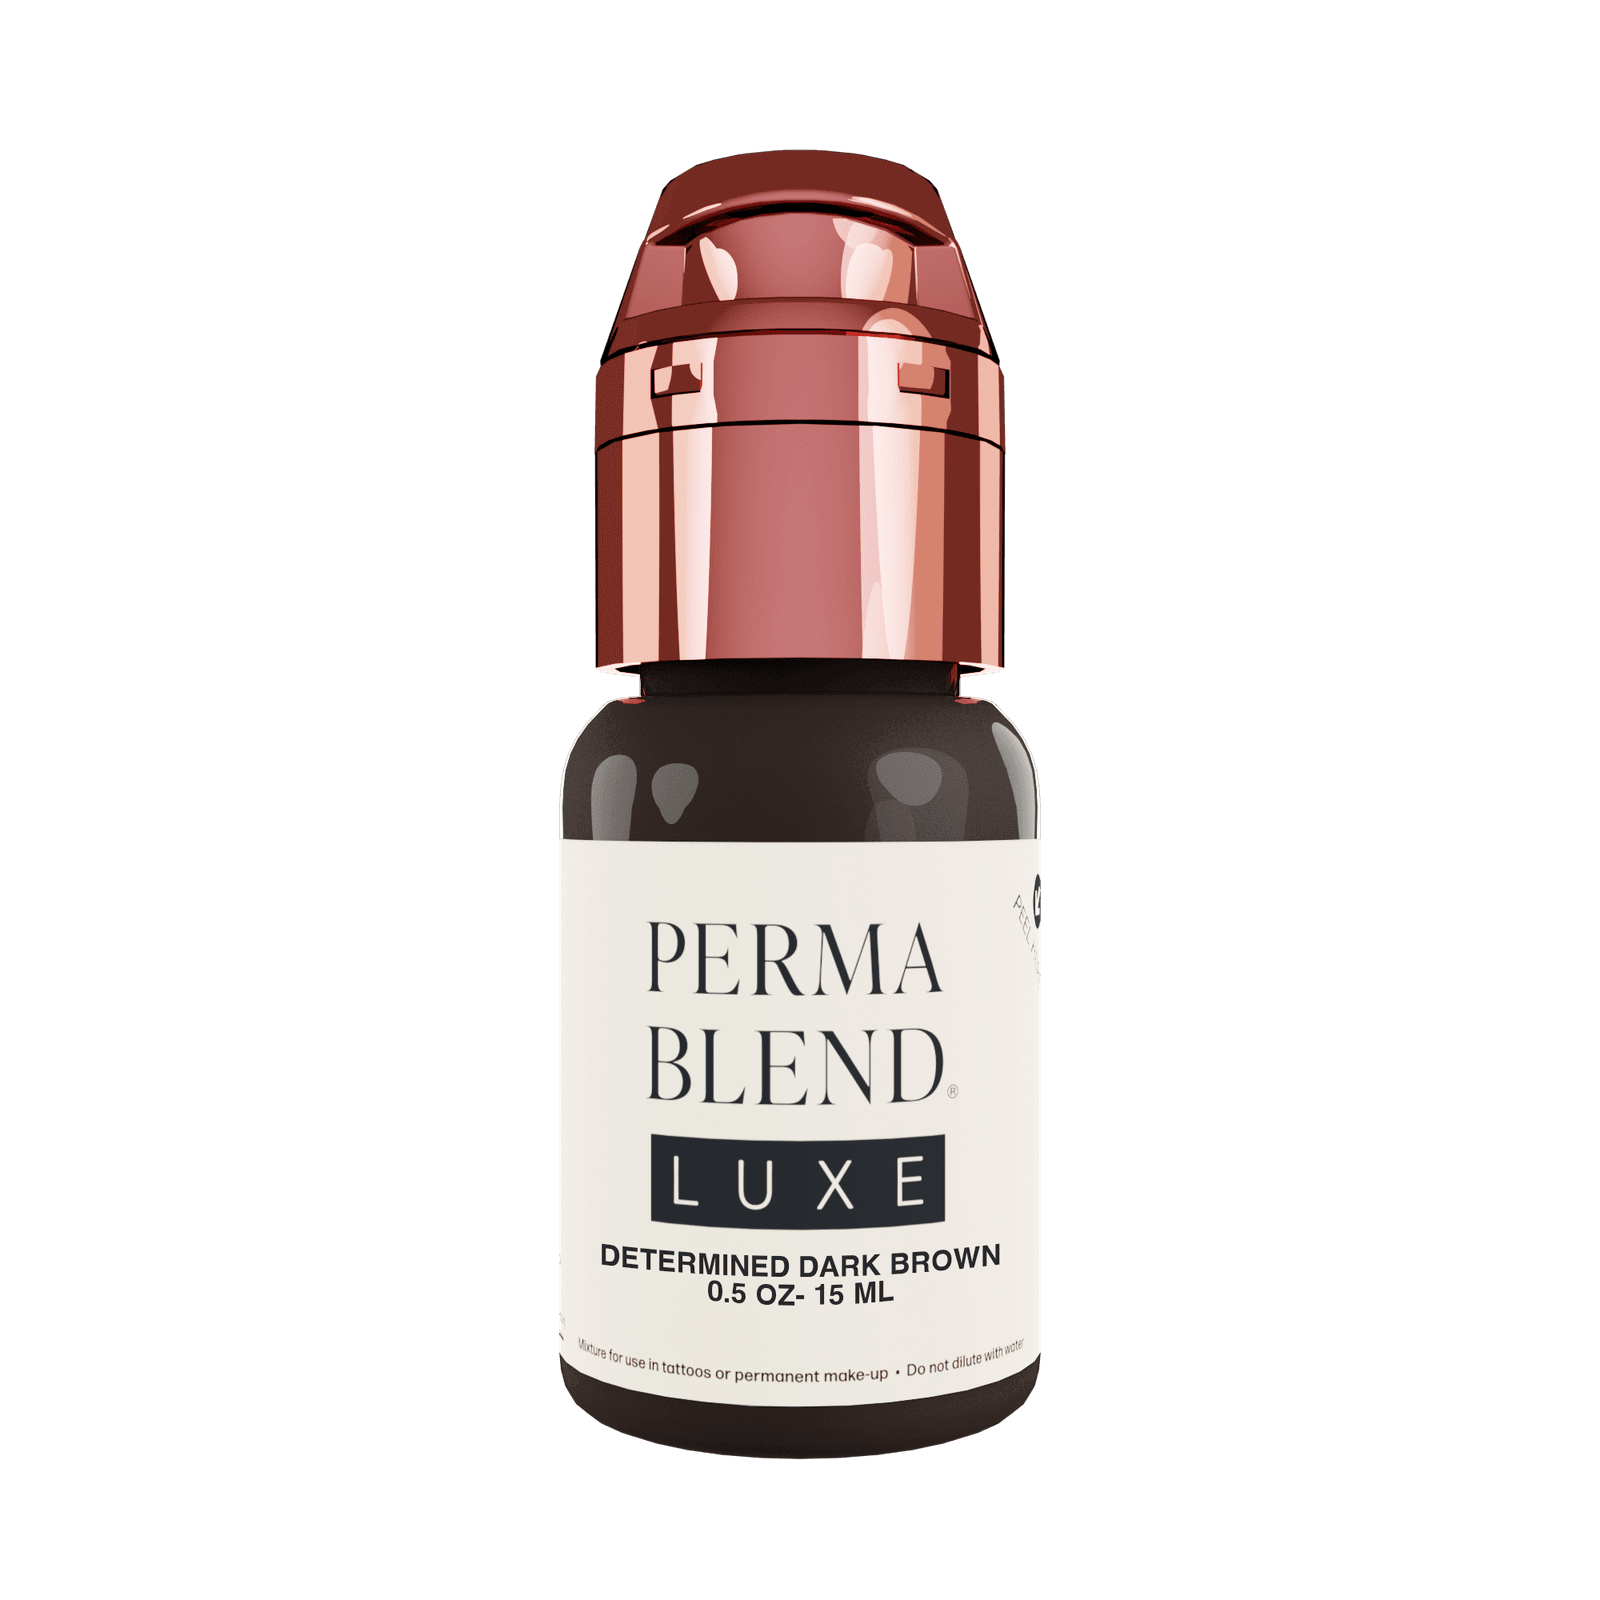 Perma Blend Luxe Determined Dark Brown